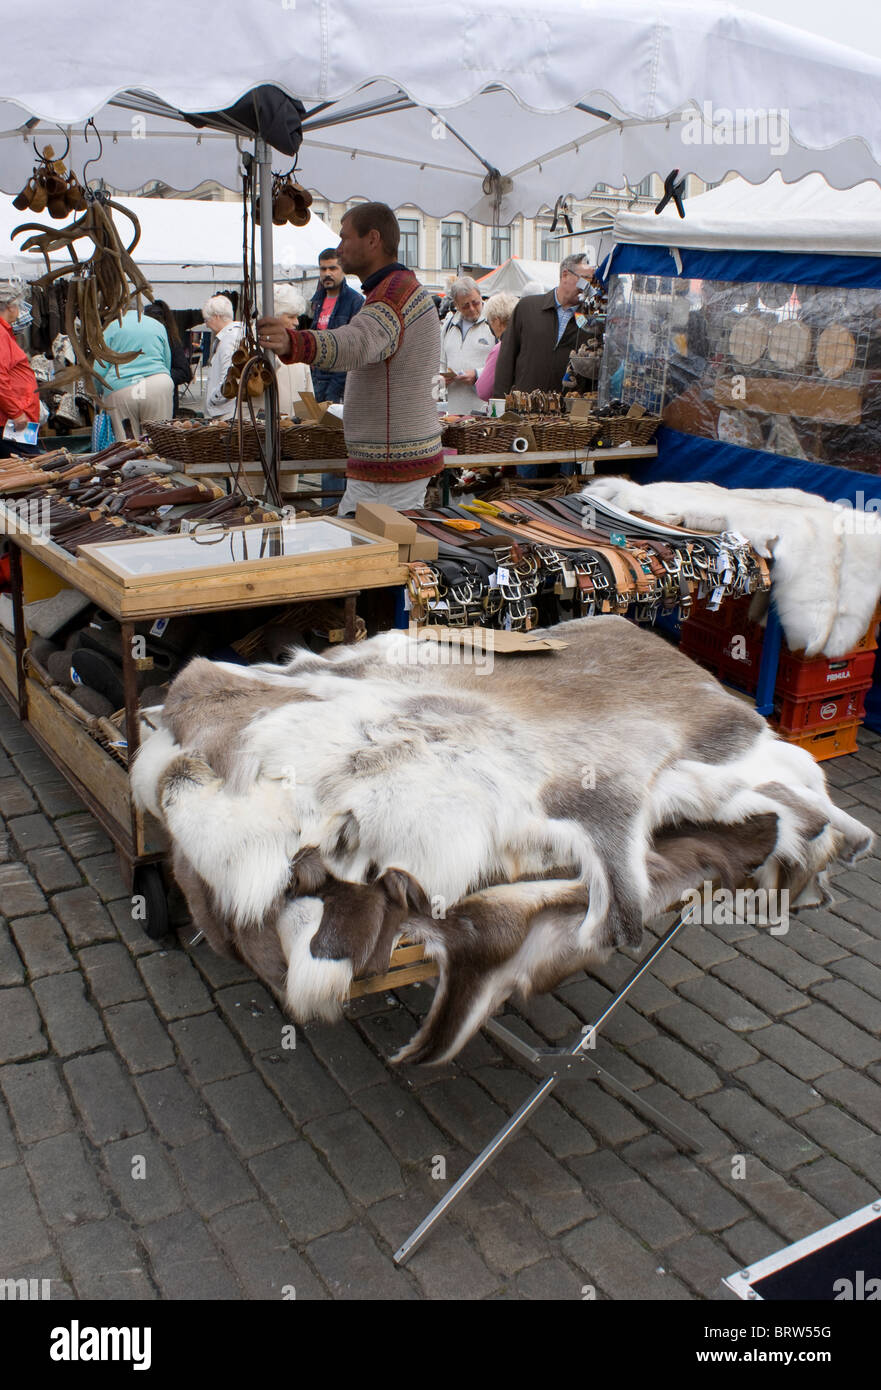 Una pelliccia in stallo la Kauppatori quayside mercato di Helsinki. Una tabella di pelli di renne nella parte anteriore. Foto Stock